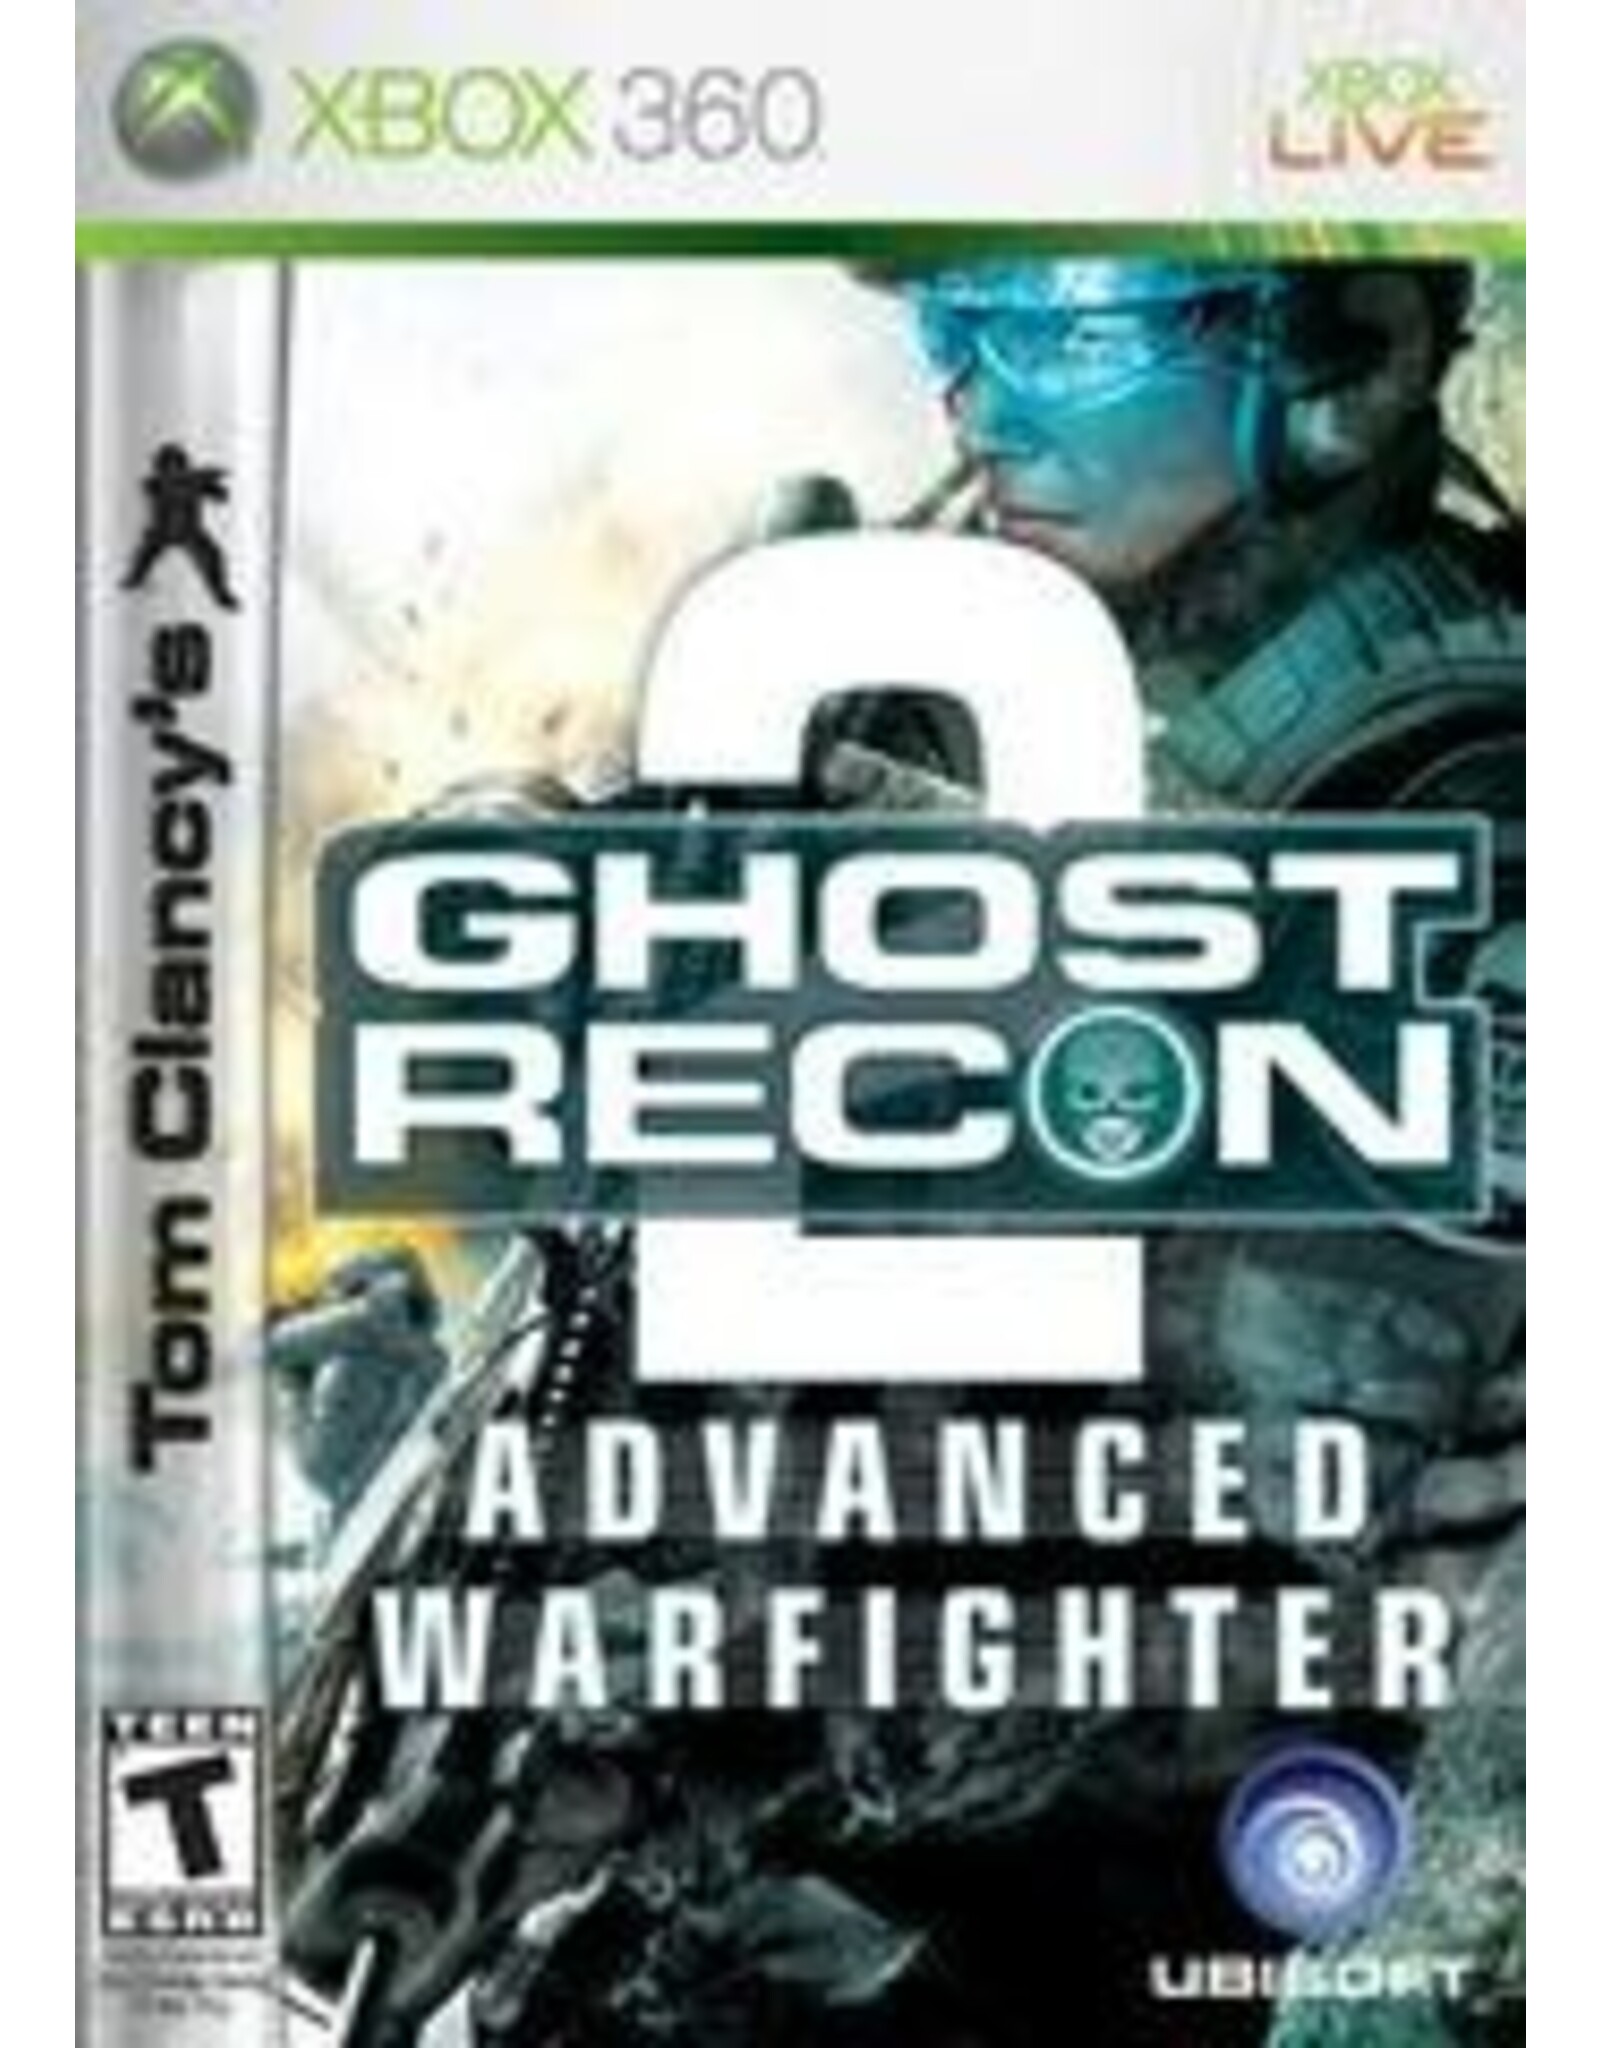 Xbox 360 Ghost Recon Advanced Warfighter 2 (No Manual)